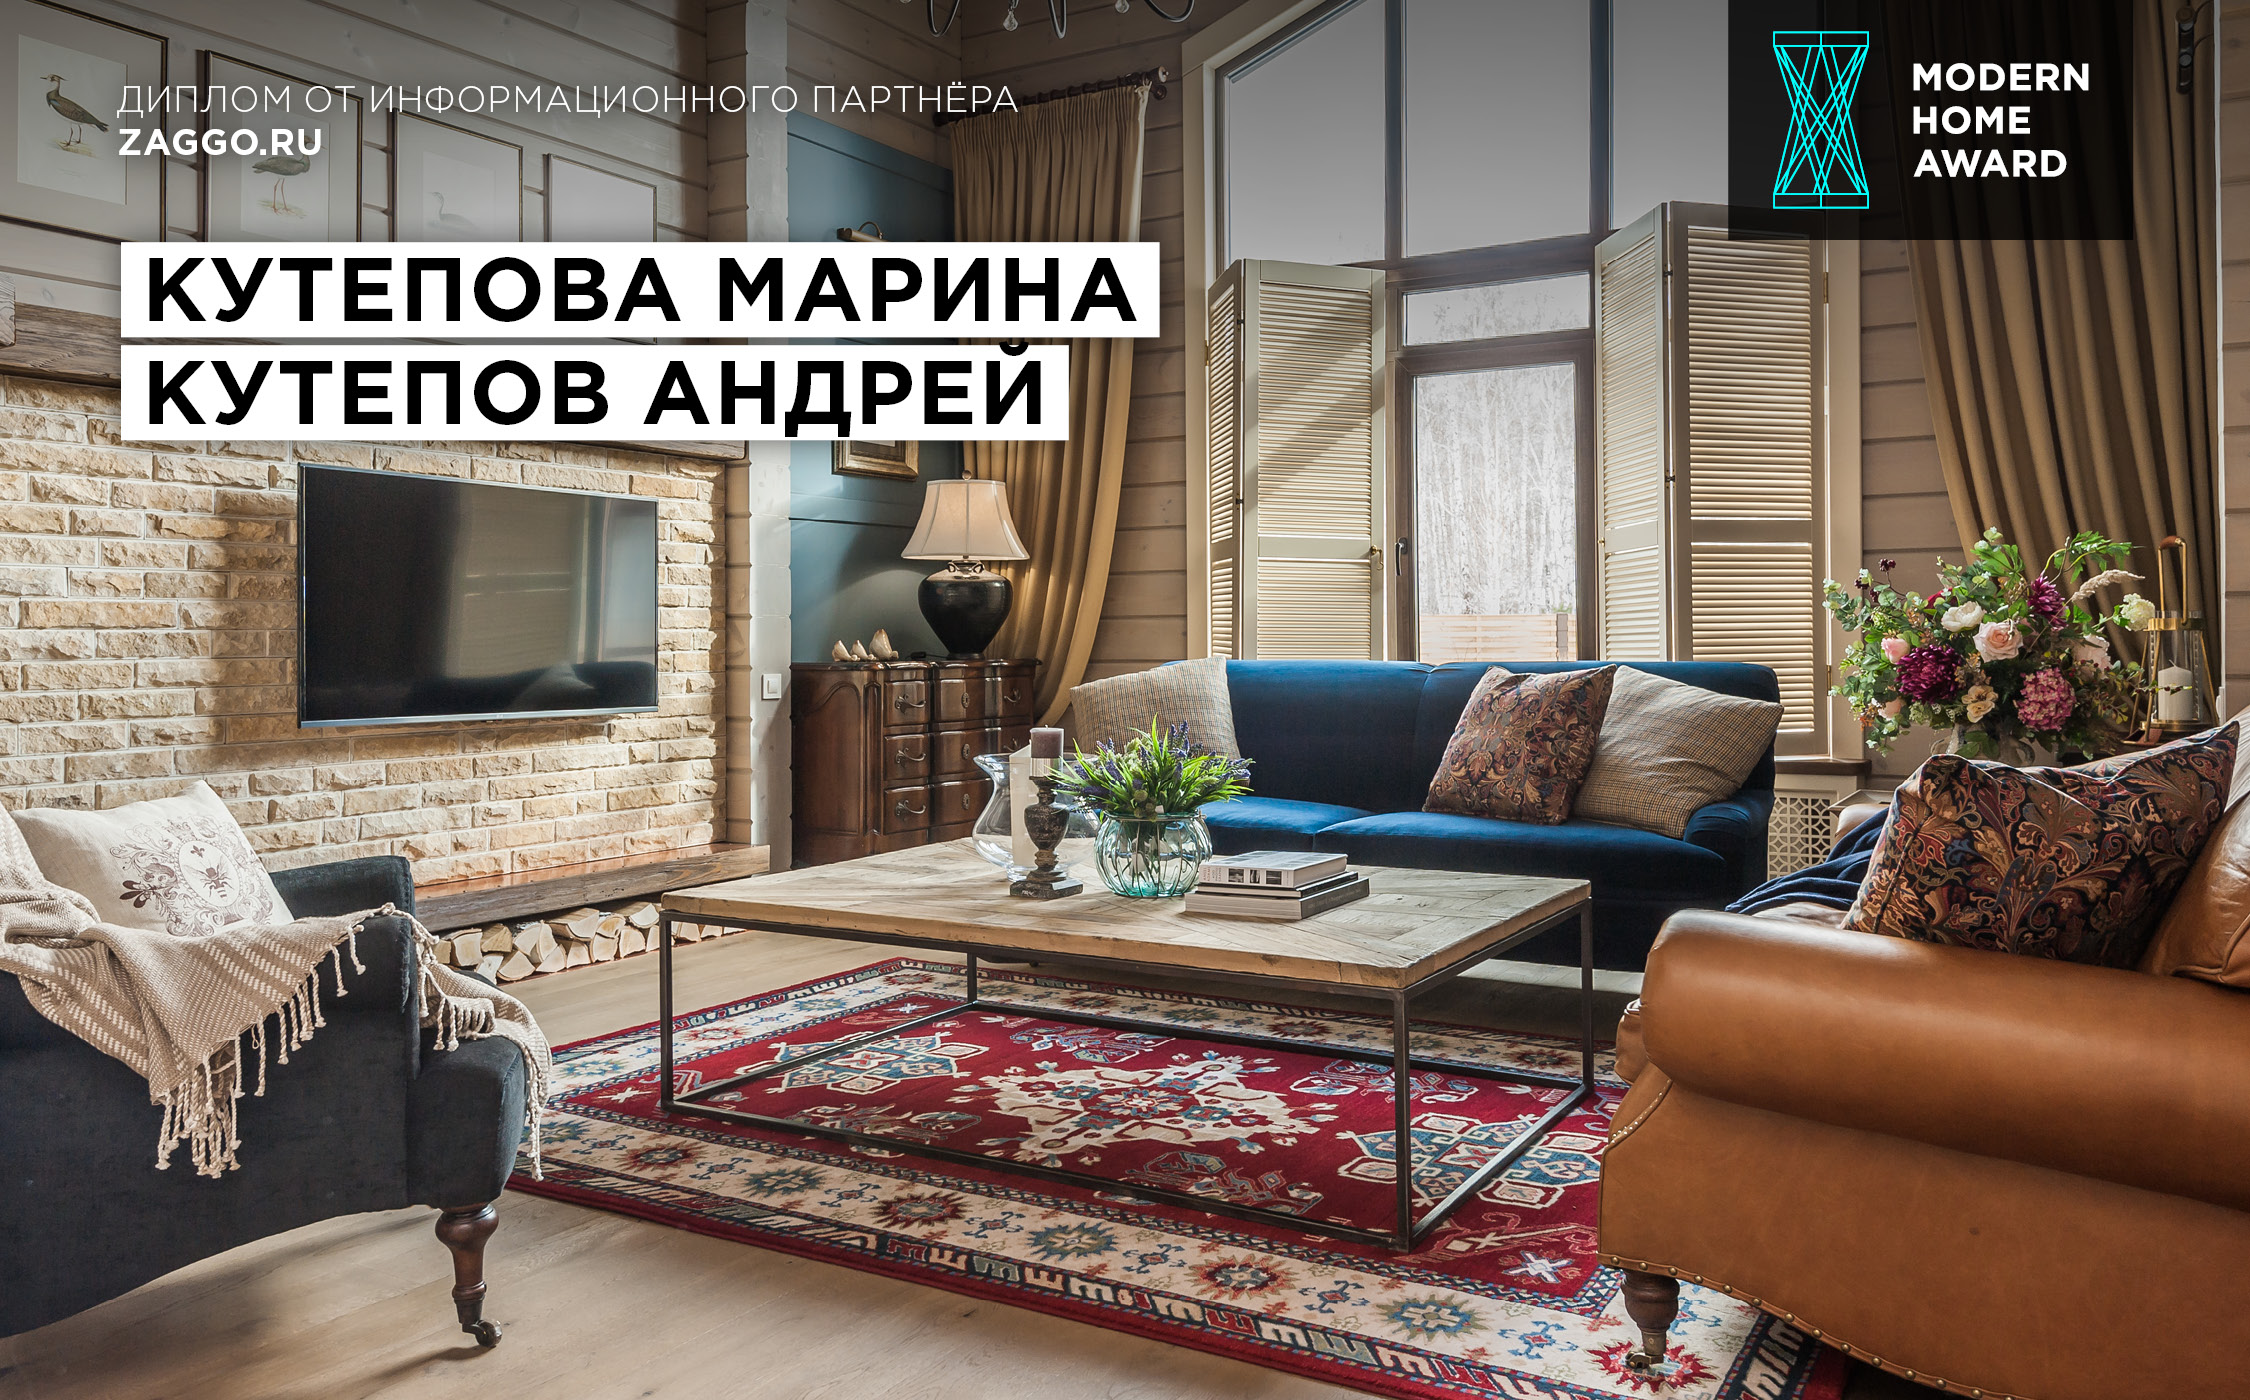 Диплом от интернет-портала Zaggo.ru — Марина и Андрей Кутеповы (интерьер дома в Челябинске)